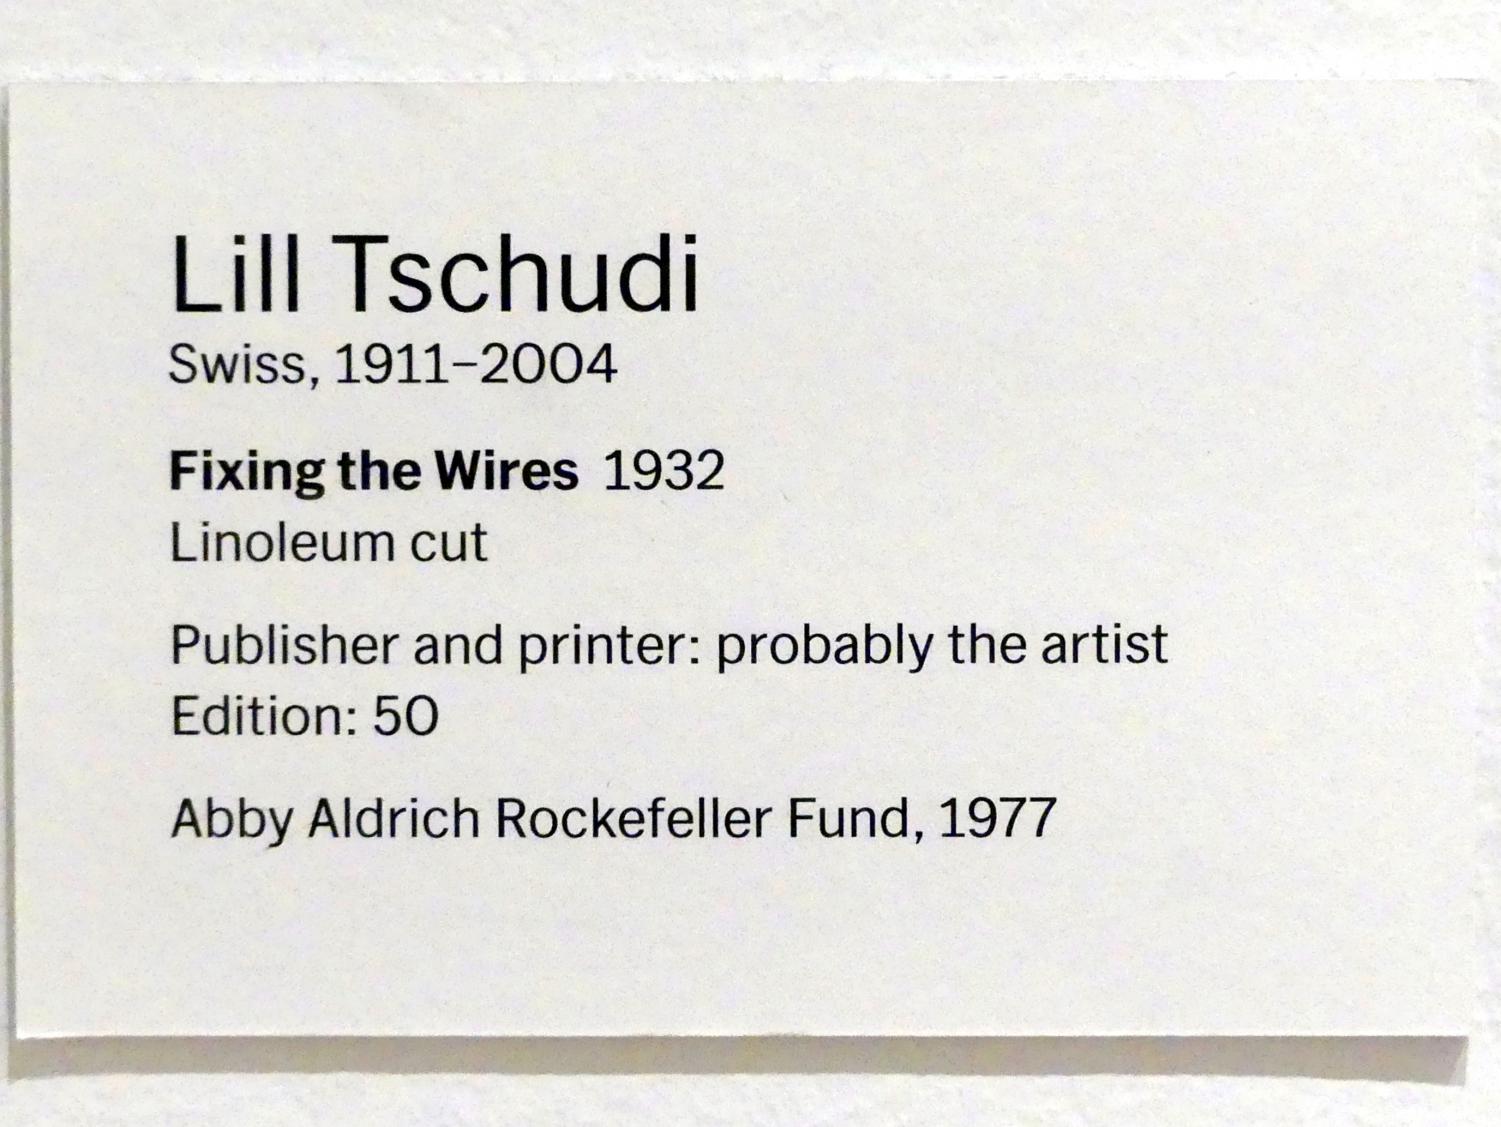 Lill Tschudi (1932), Befestigung der Kabel, New York, Museum of Modern Art (MoMA), Saal 523, 1932, Bild 2/2